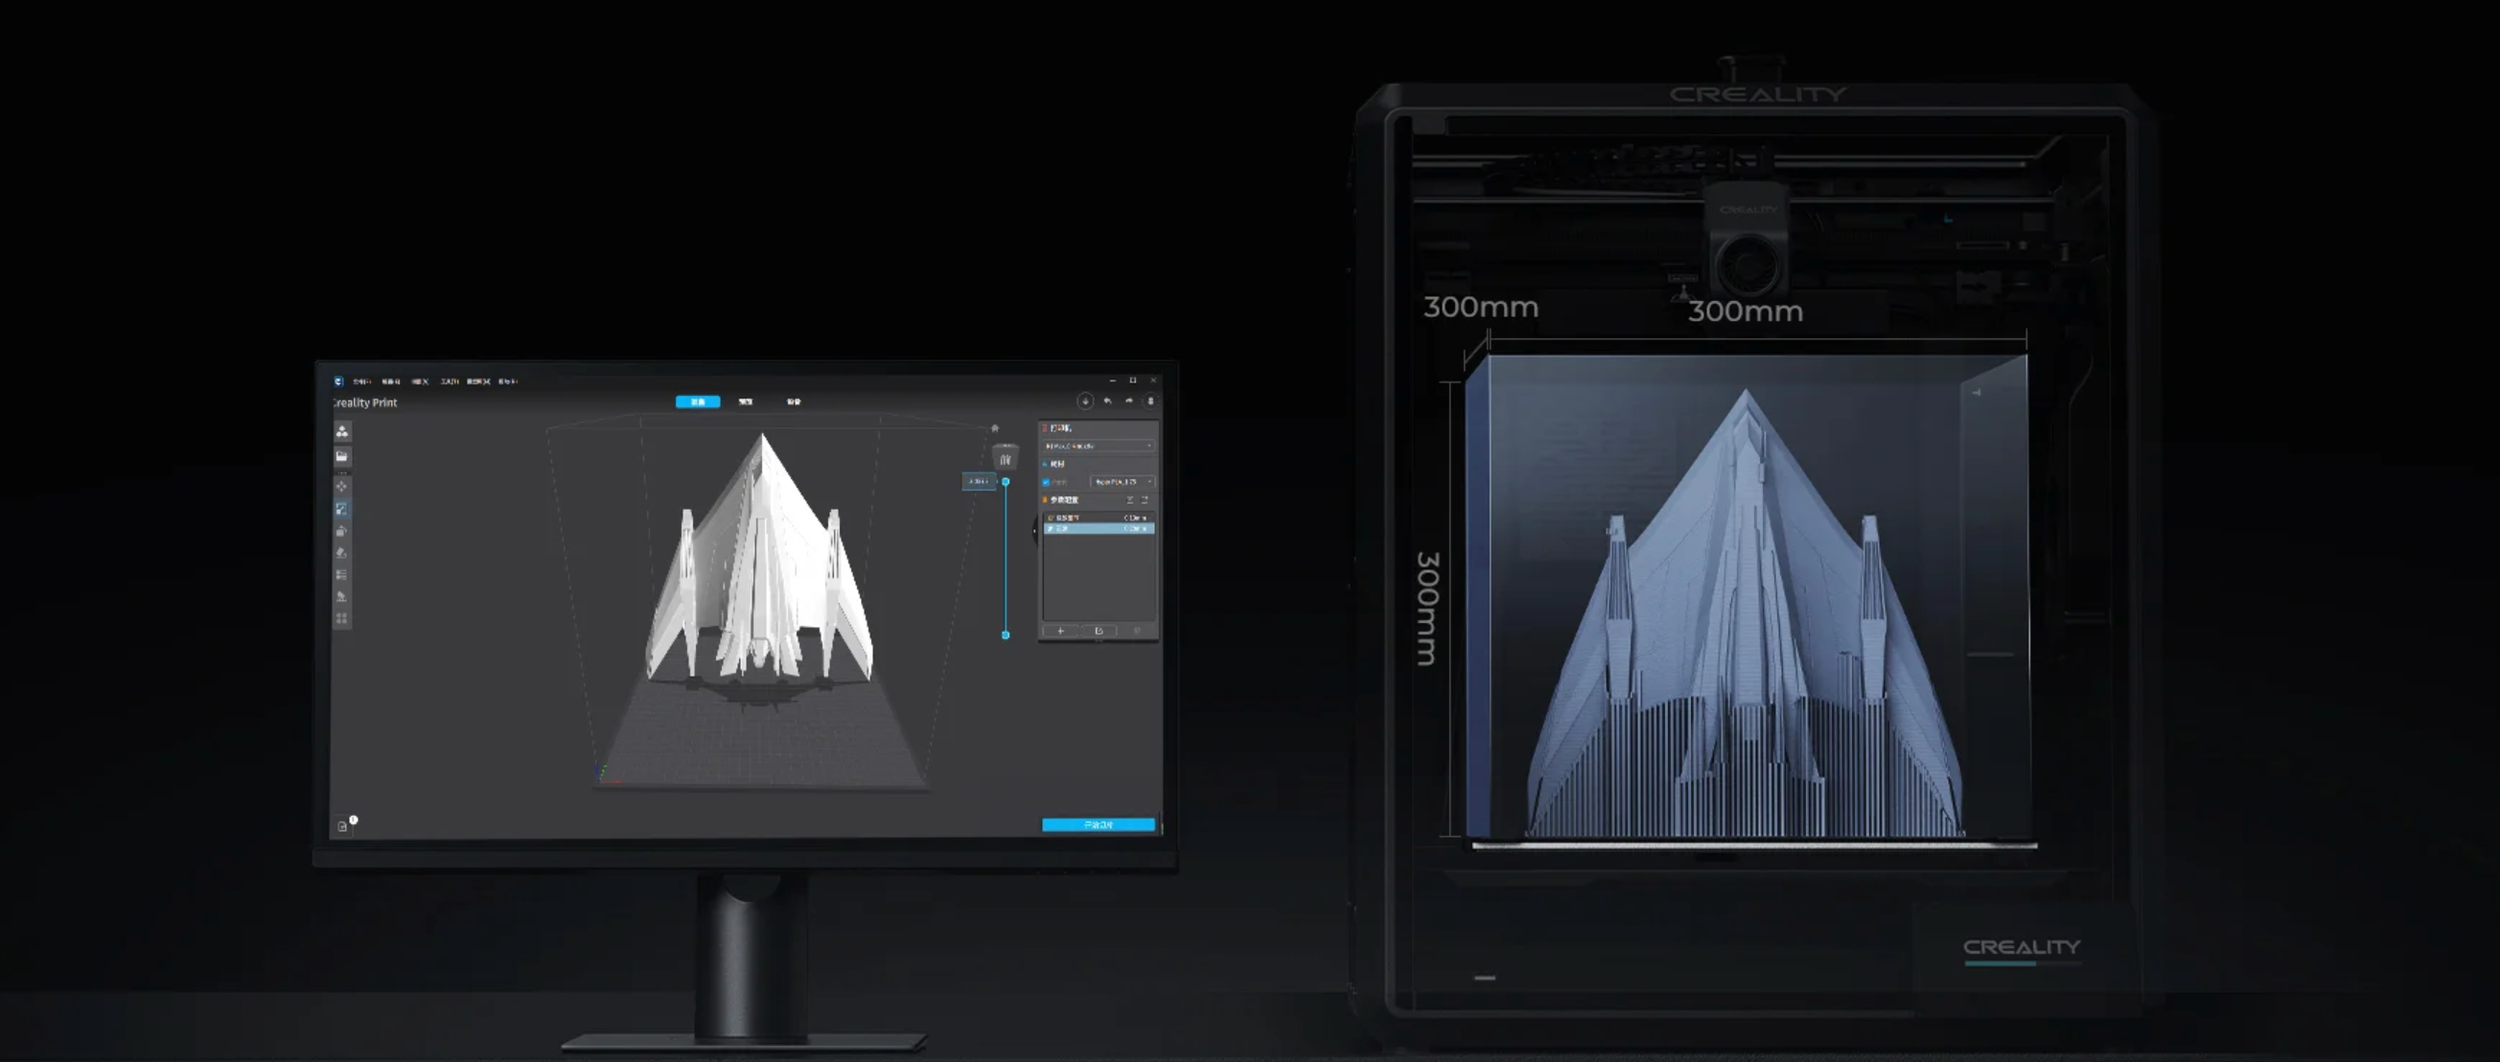 Creality K1 Max 3D Printer Improves Printing with AI, LIDAR, and a Camera